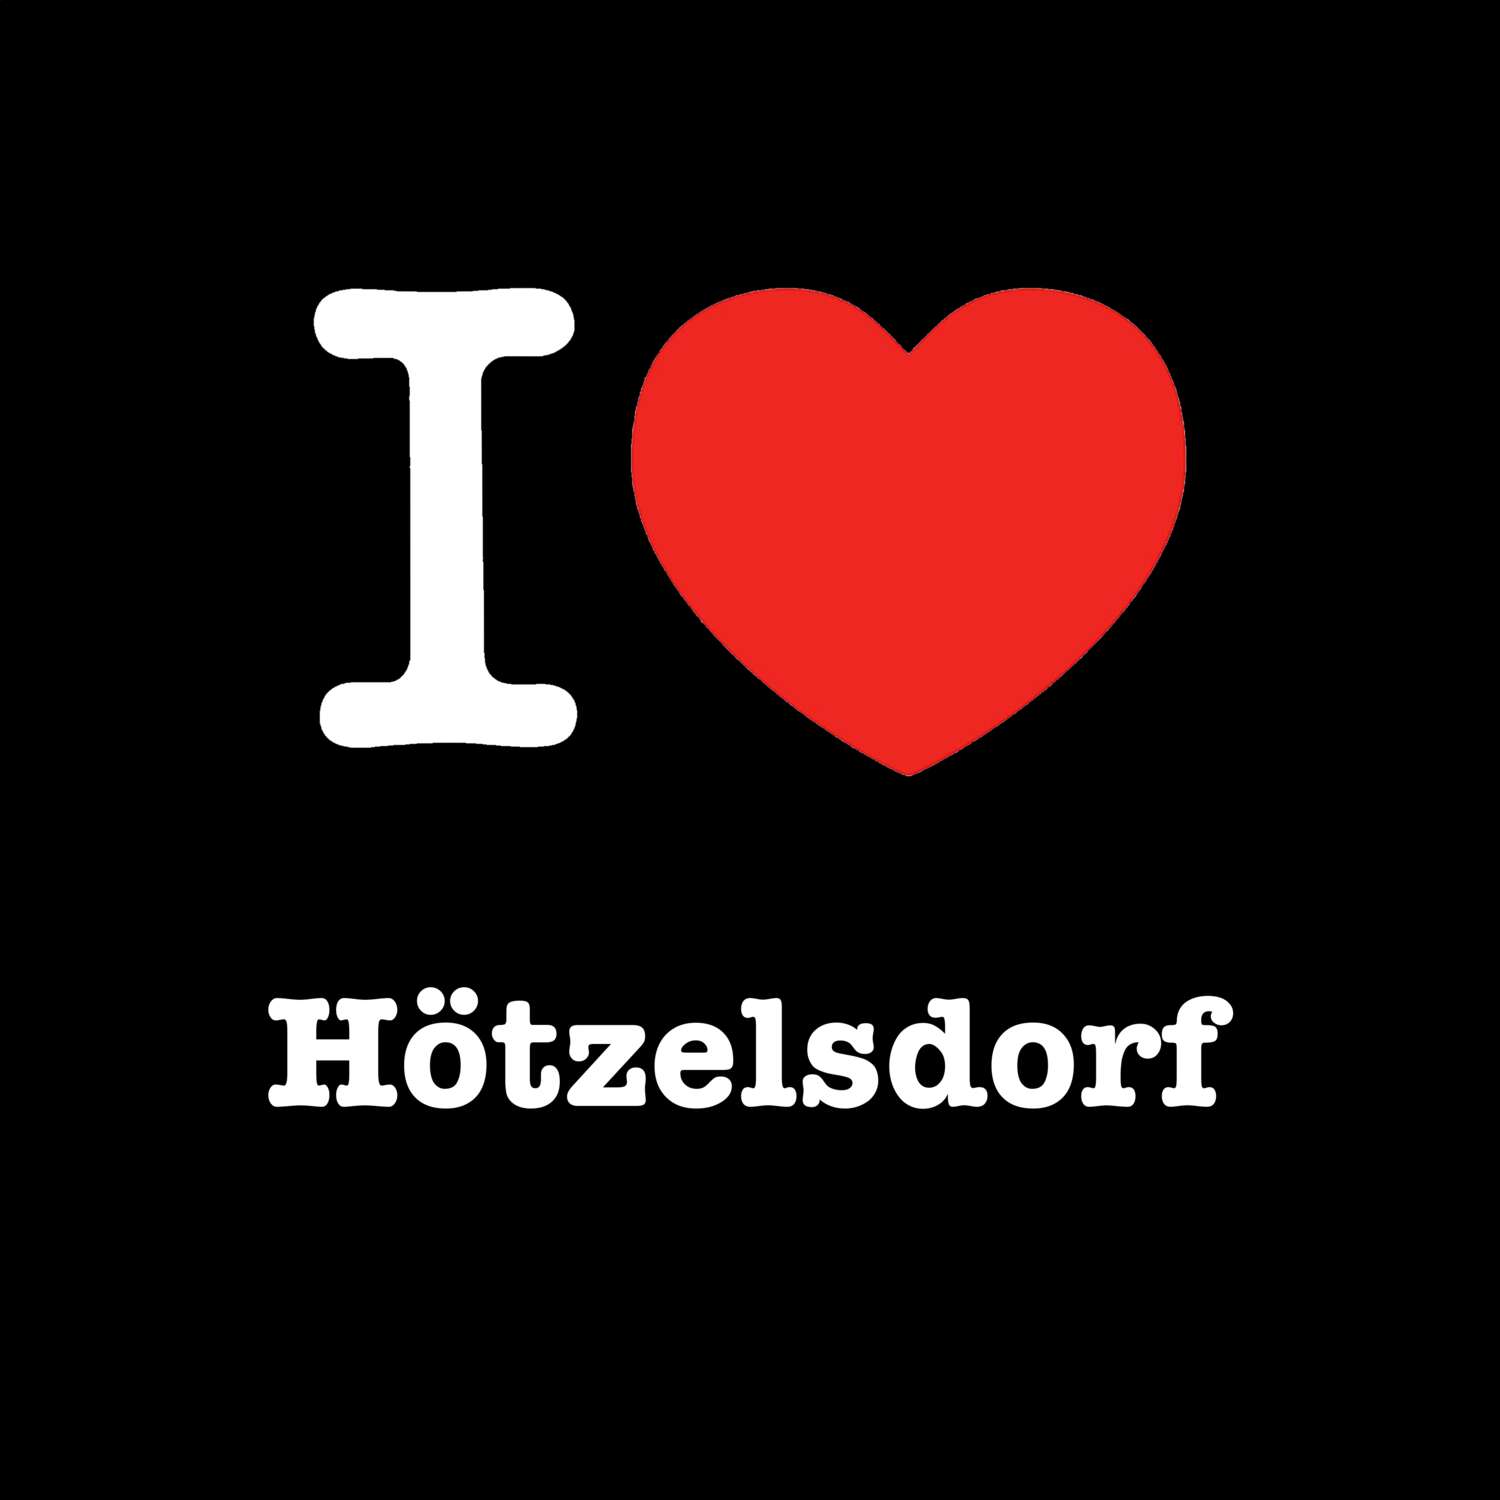 Hötzelsdorf T-Shirt »I love«